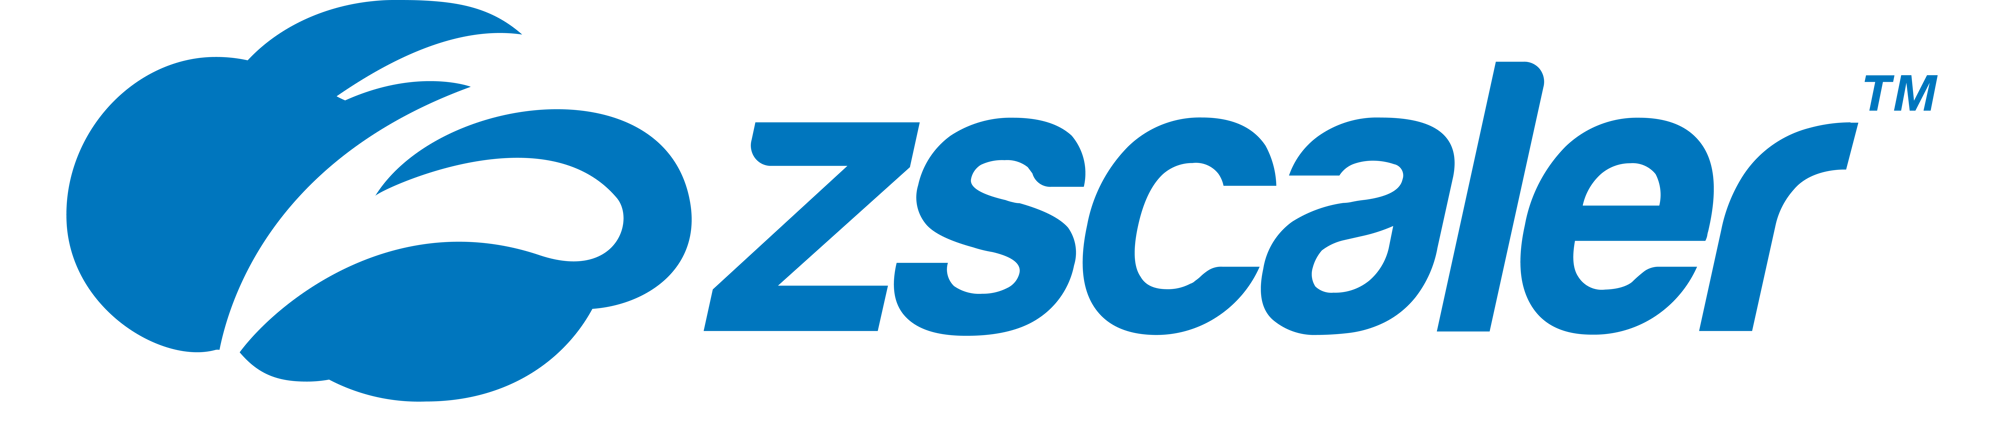 Zscaler - Matrium Partner